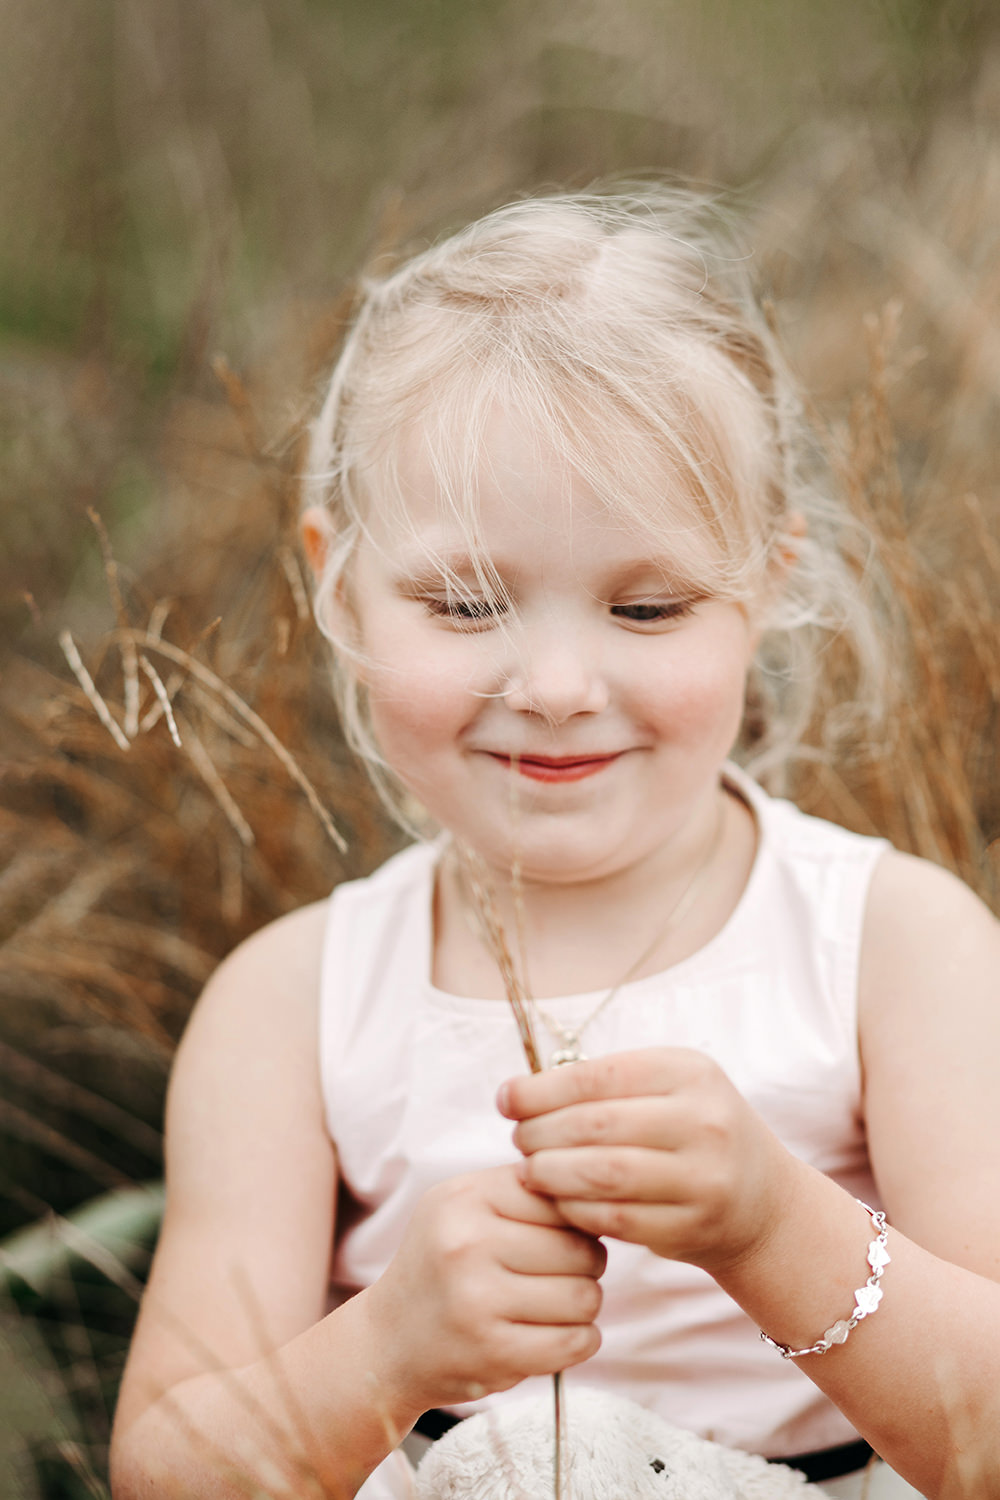 Gezinsfotoshoot buiten met een klein meisje dat een bloem vasthoudt in een grasveld.